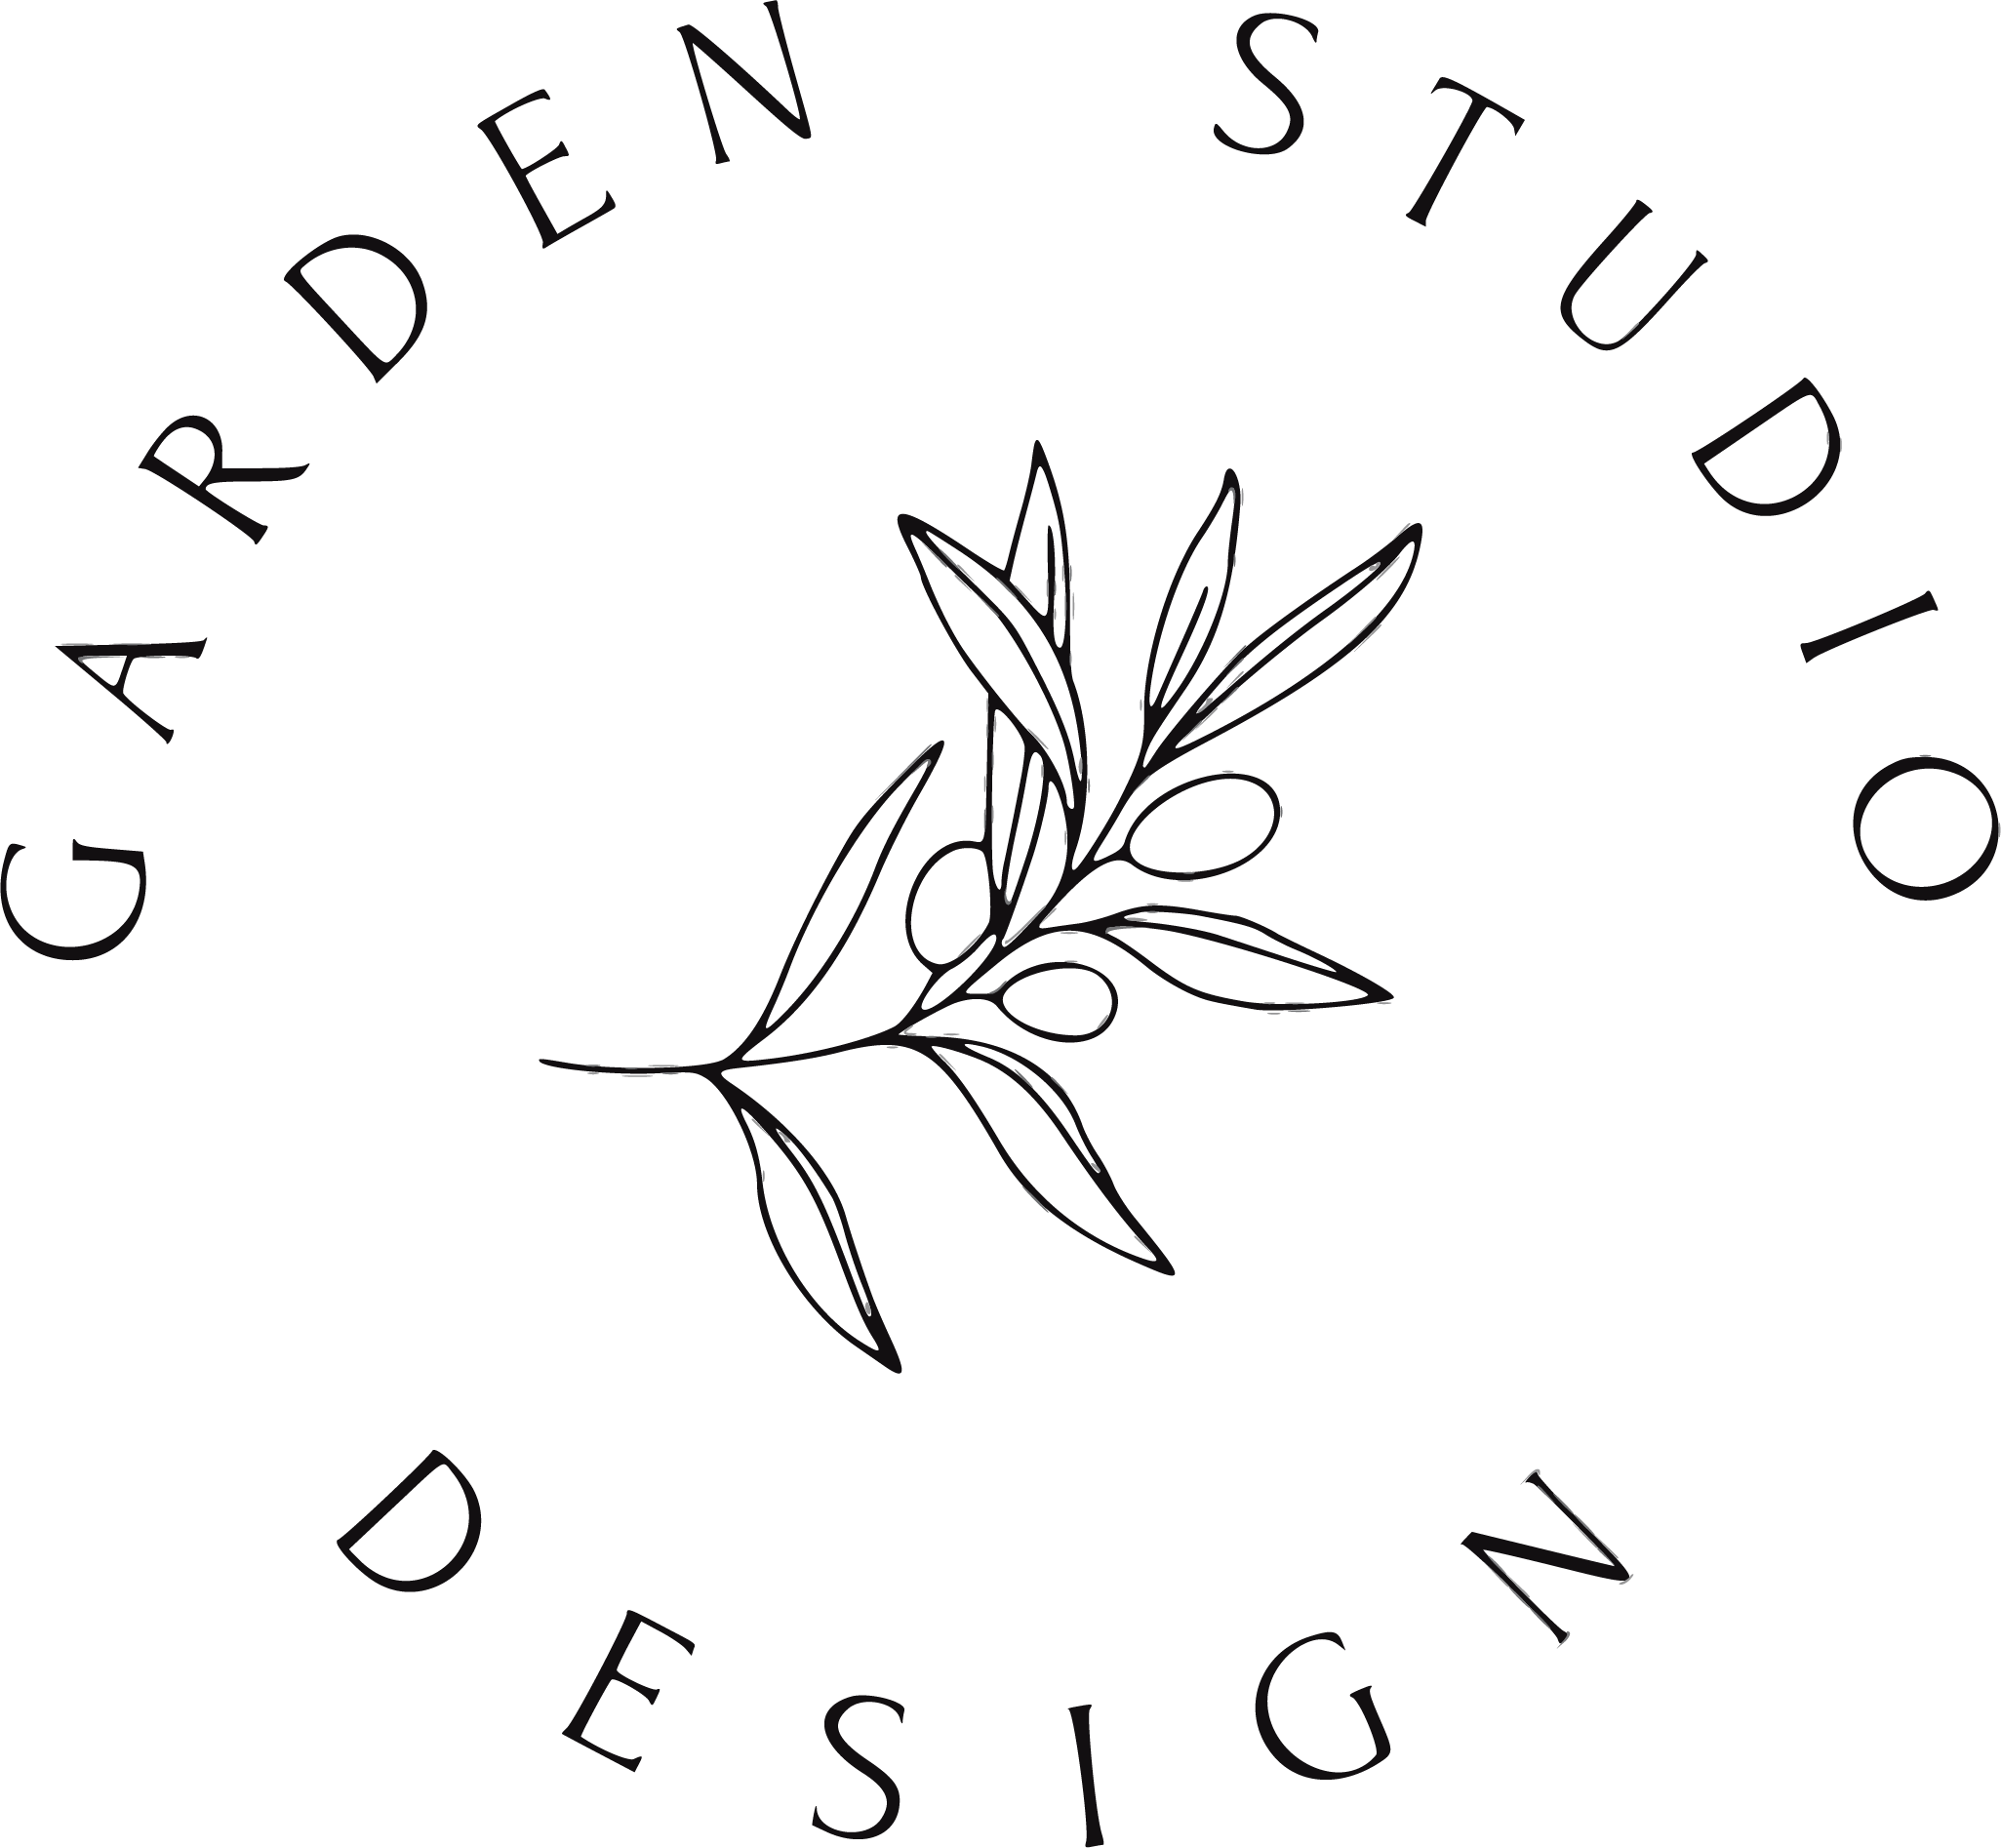 GSD logo